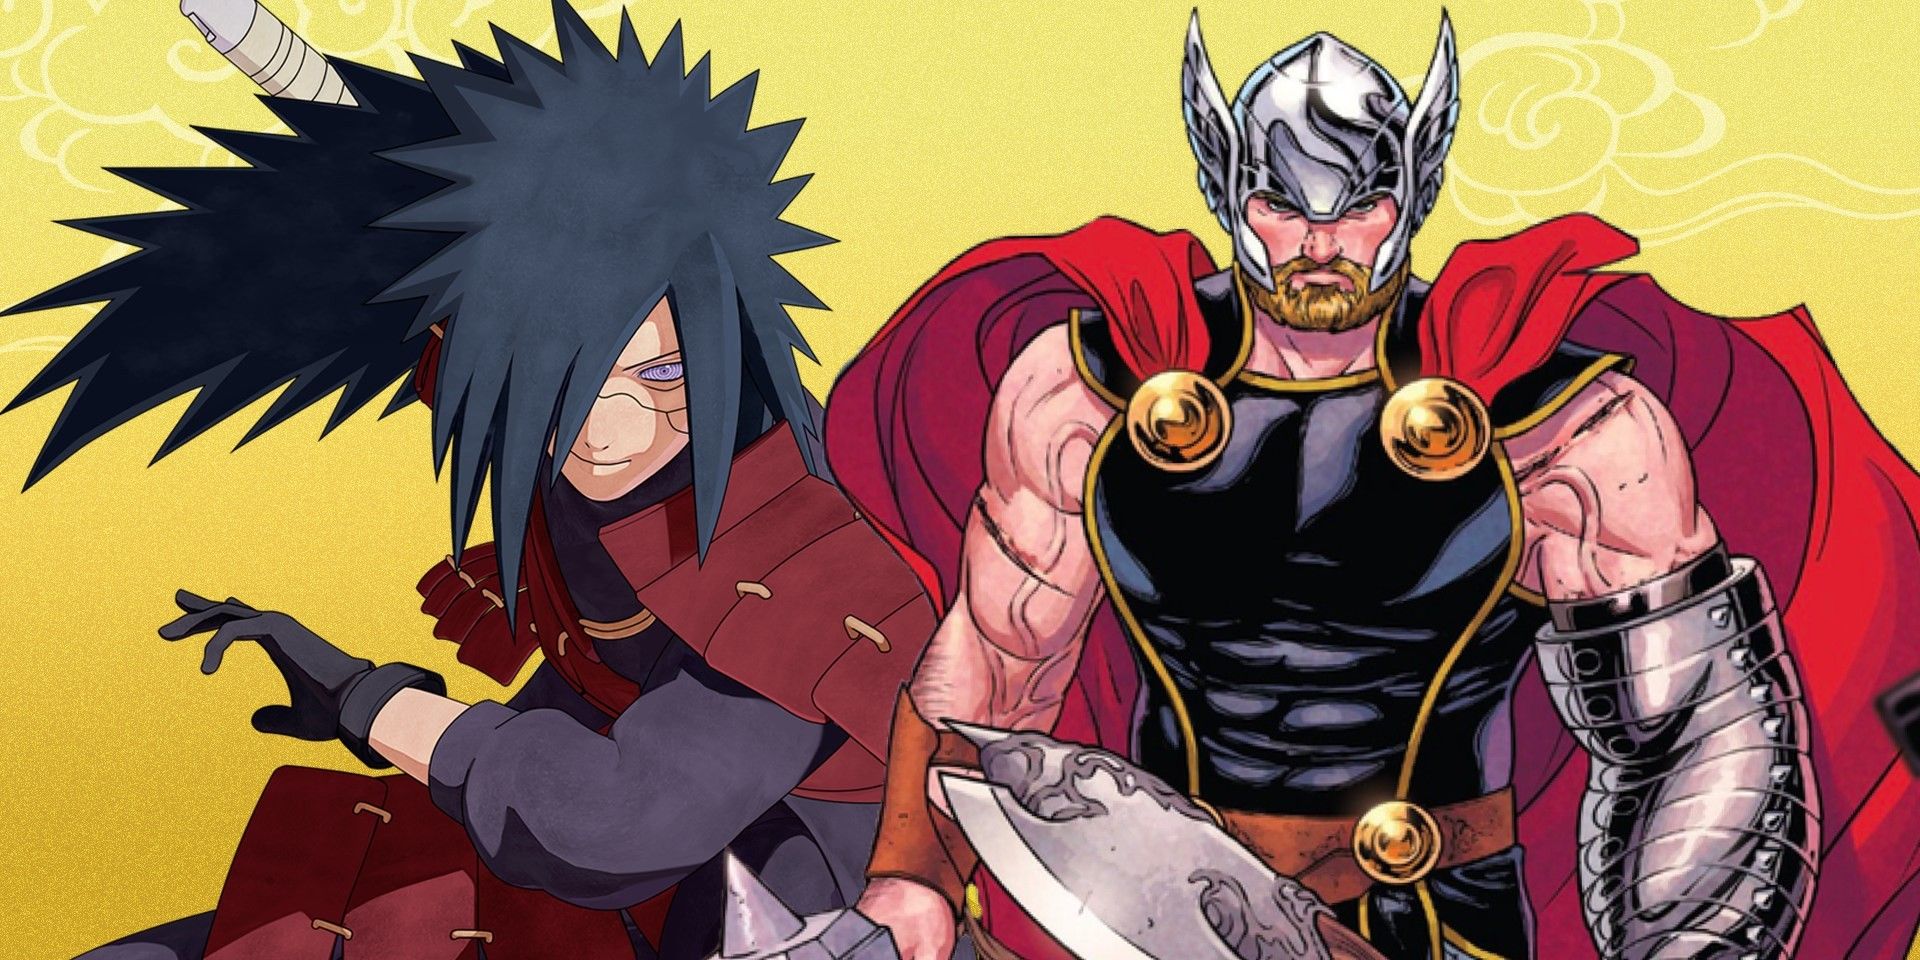 Thor vs Madara une a Naruto y Marvel Fandom en un Fanart asombroso